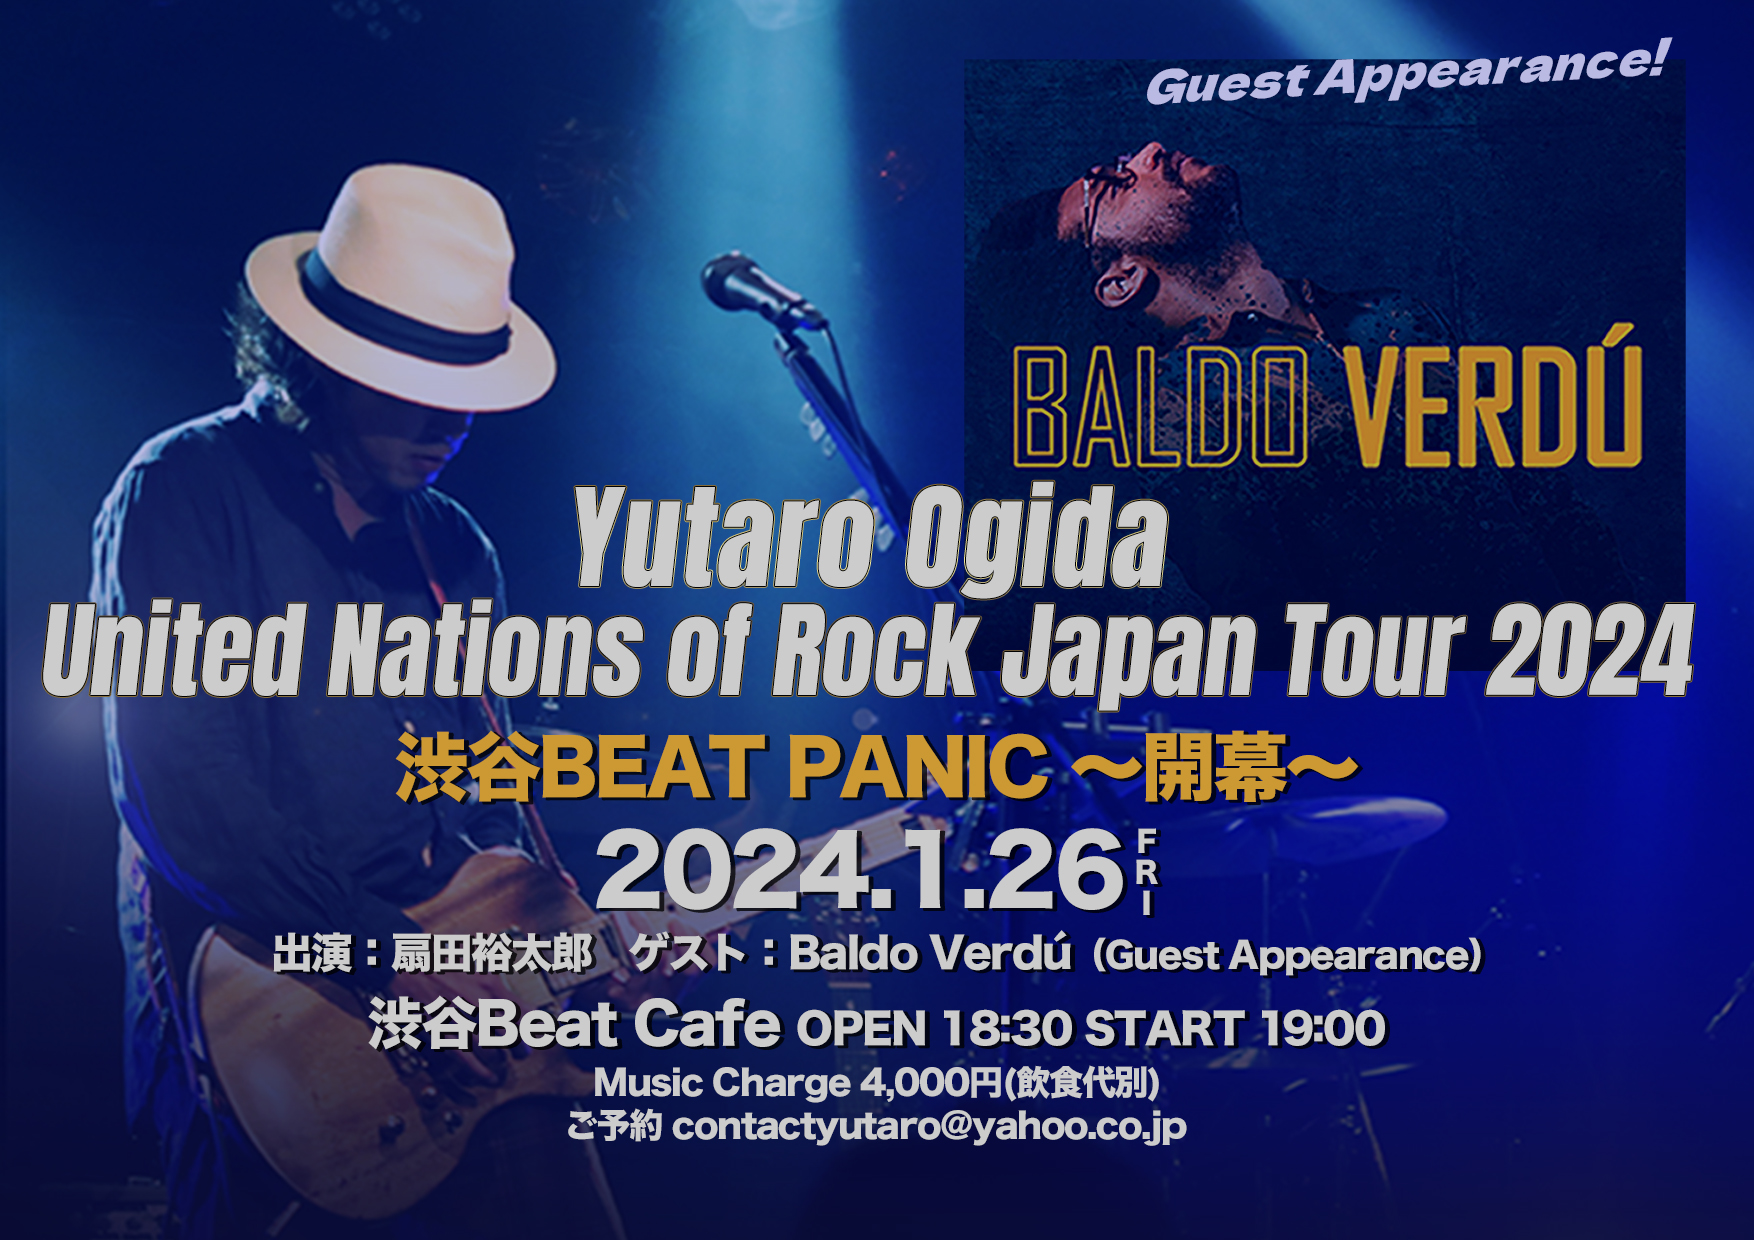 Yutaro Ogida United Nations of Rock Japan Tour 2024